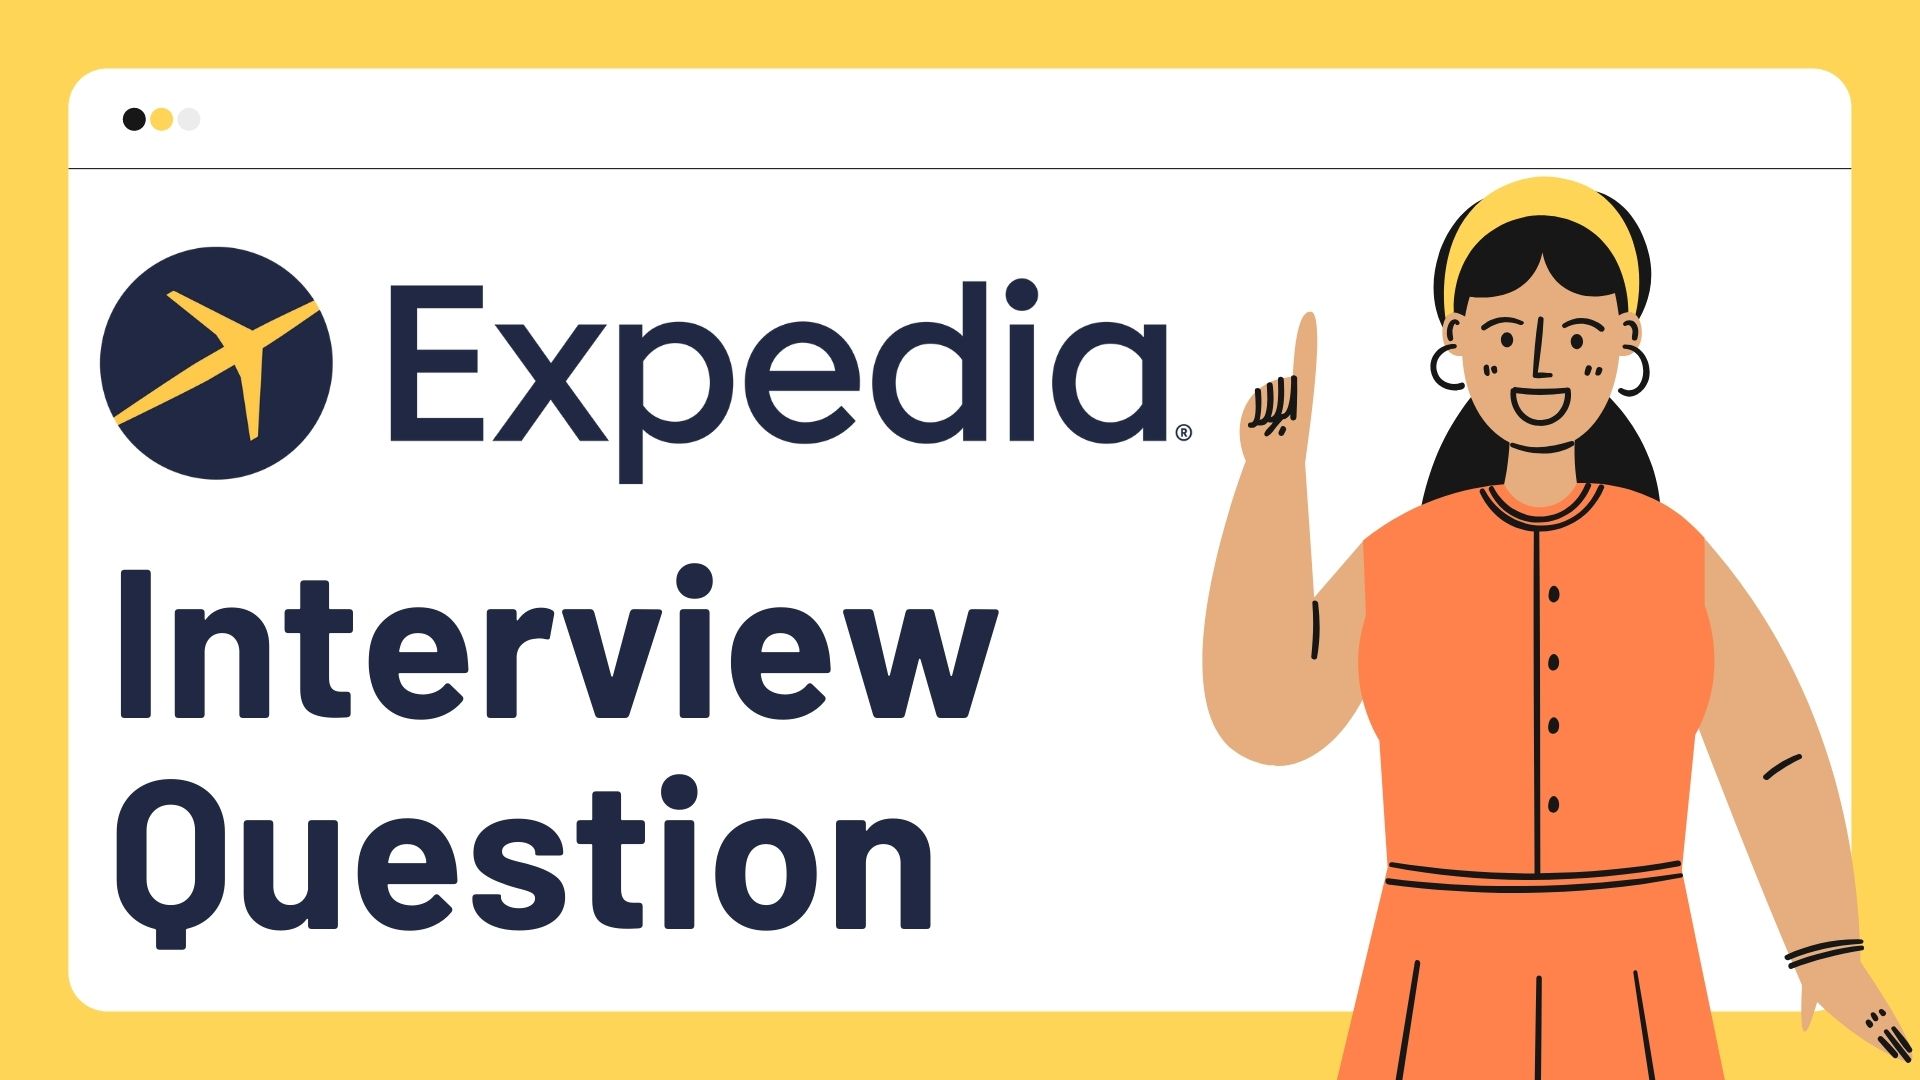 Expedia ярилцлагын асуултууд